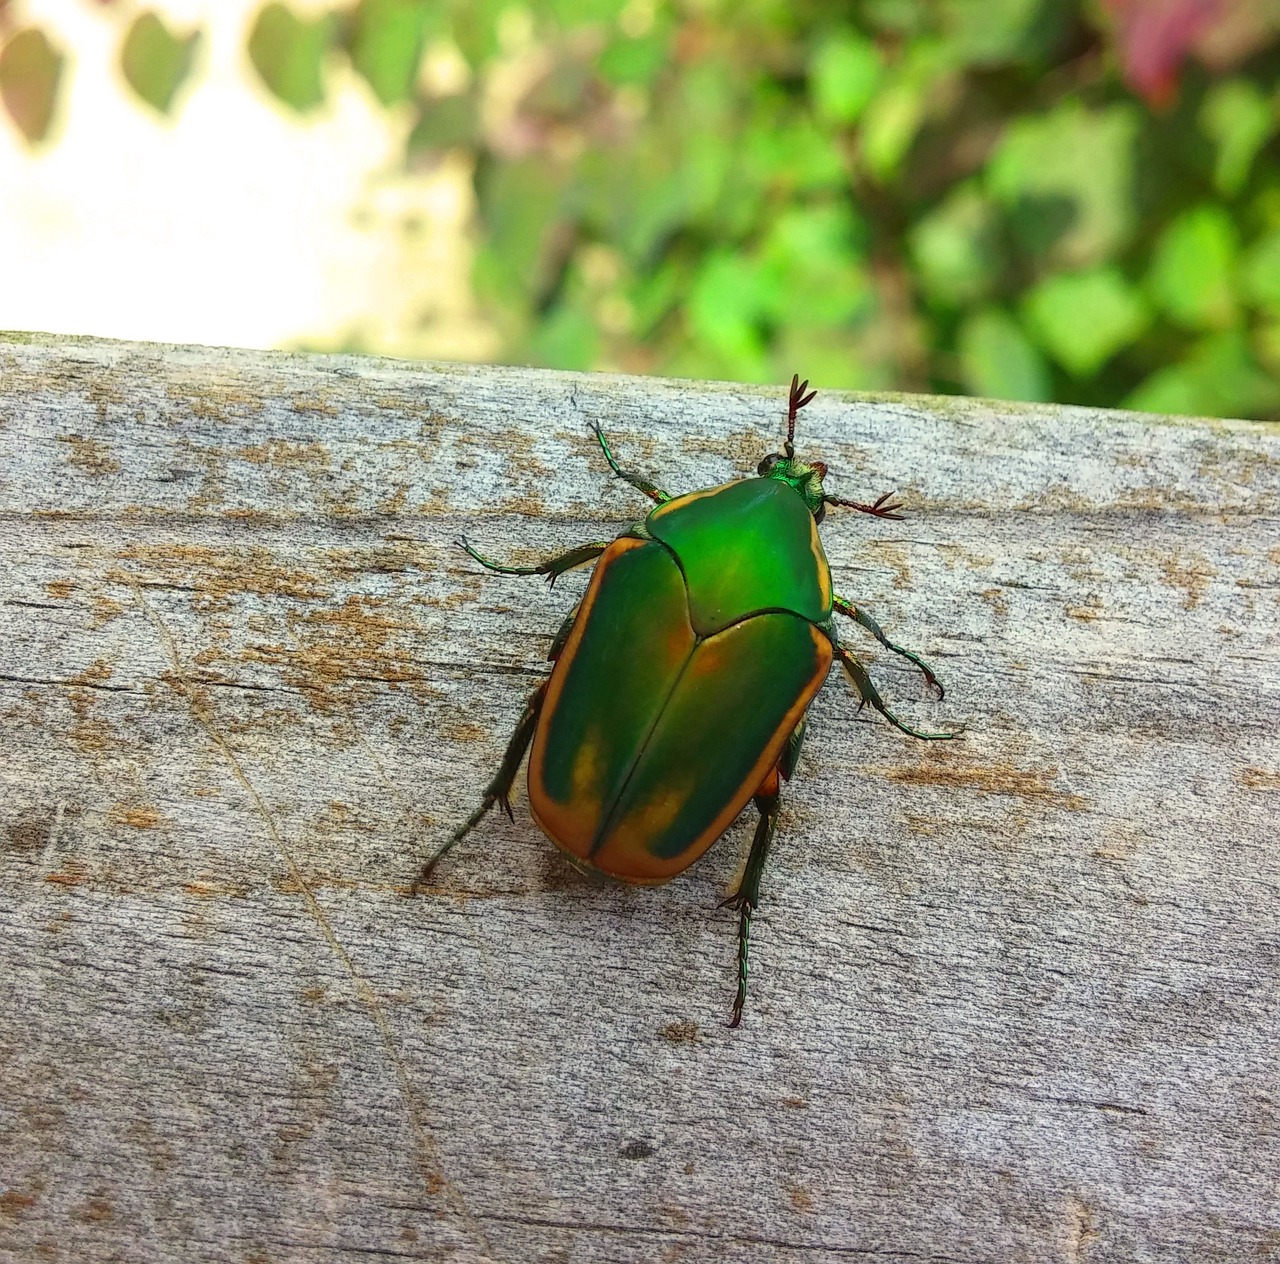 beetle figeater beetle green fruit beetle free photo